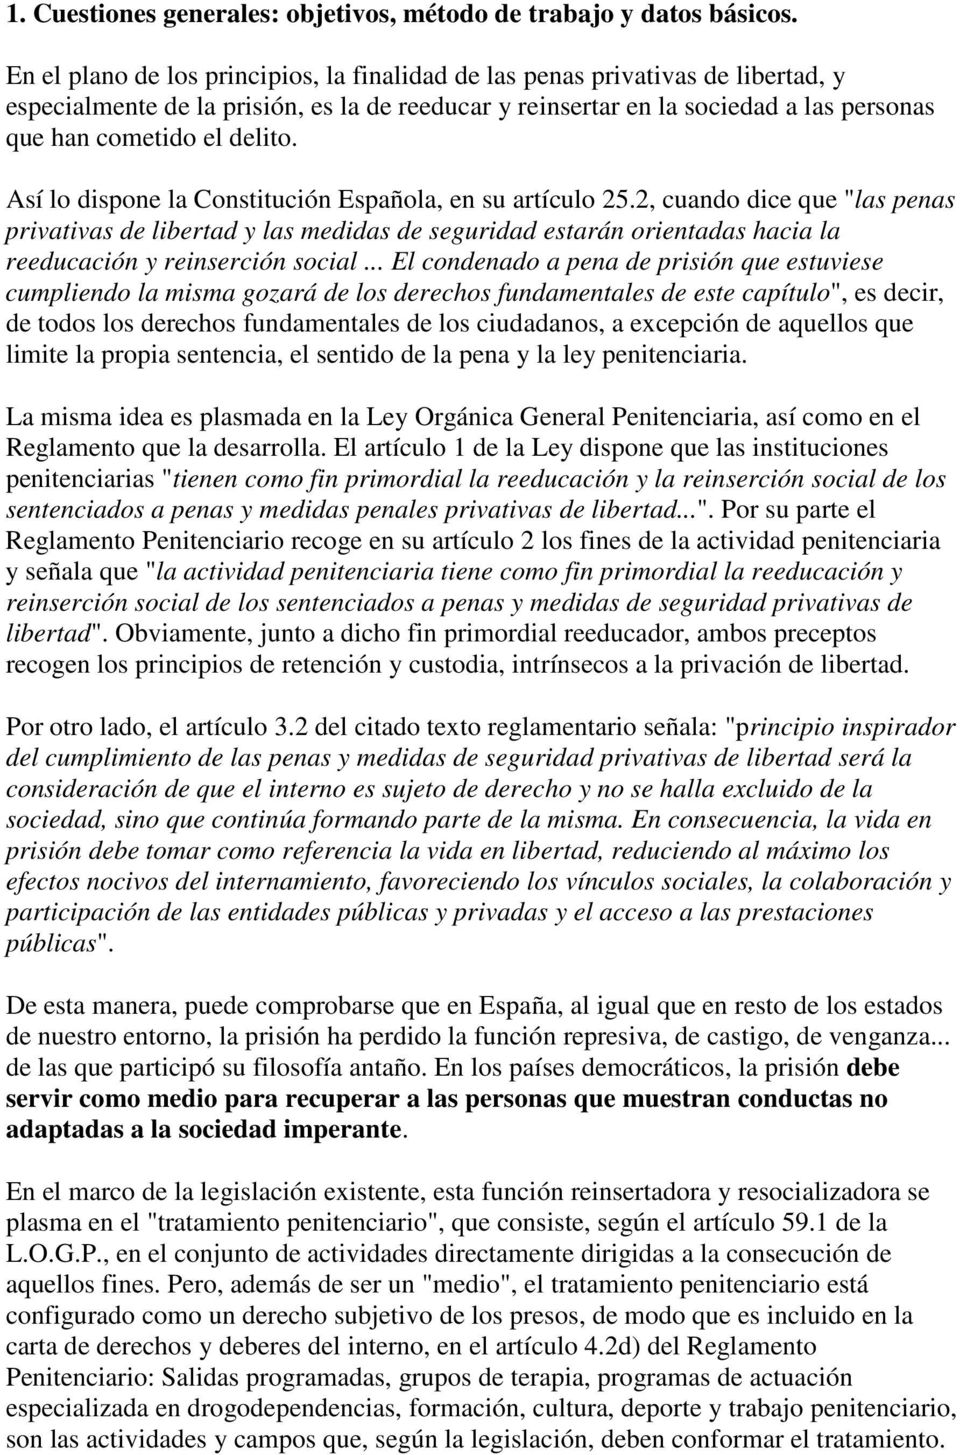 Así lo dispone la Constitución Española, en su artículo 25.2, cuando dice que "las penas privativas de libertad y las medidas de seguridad estarán orientadas hacia la reeducación y reinserción social.